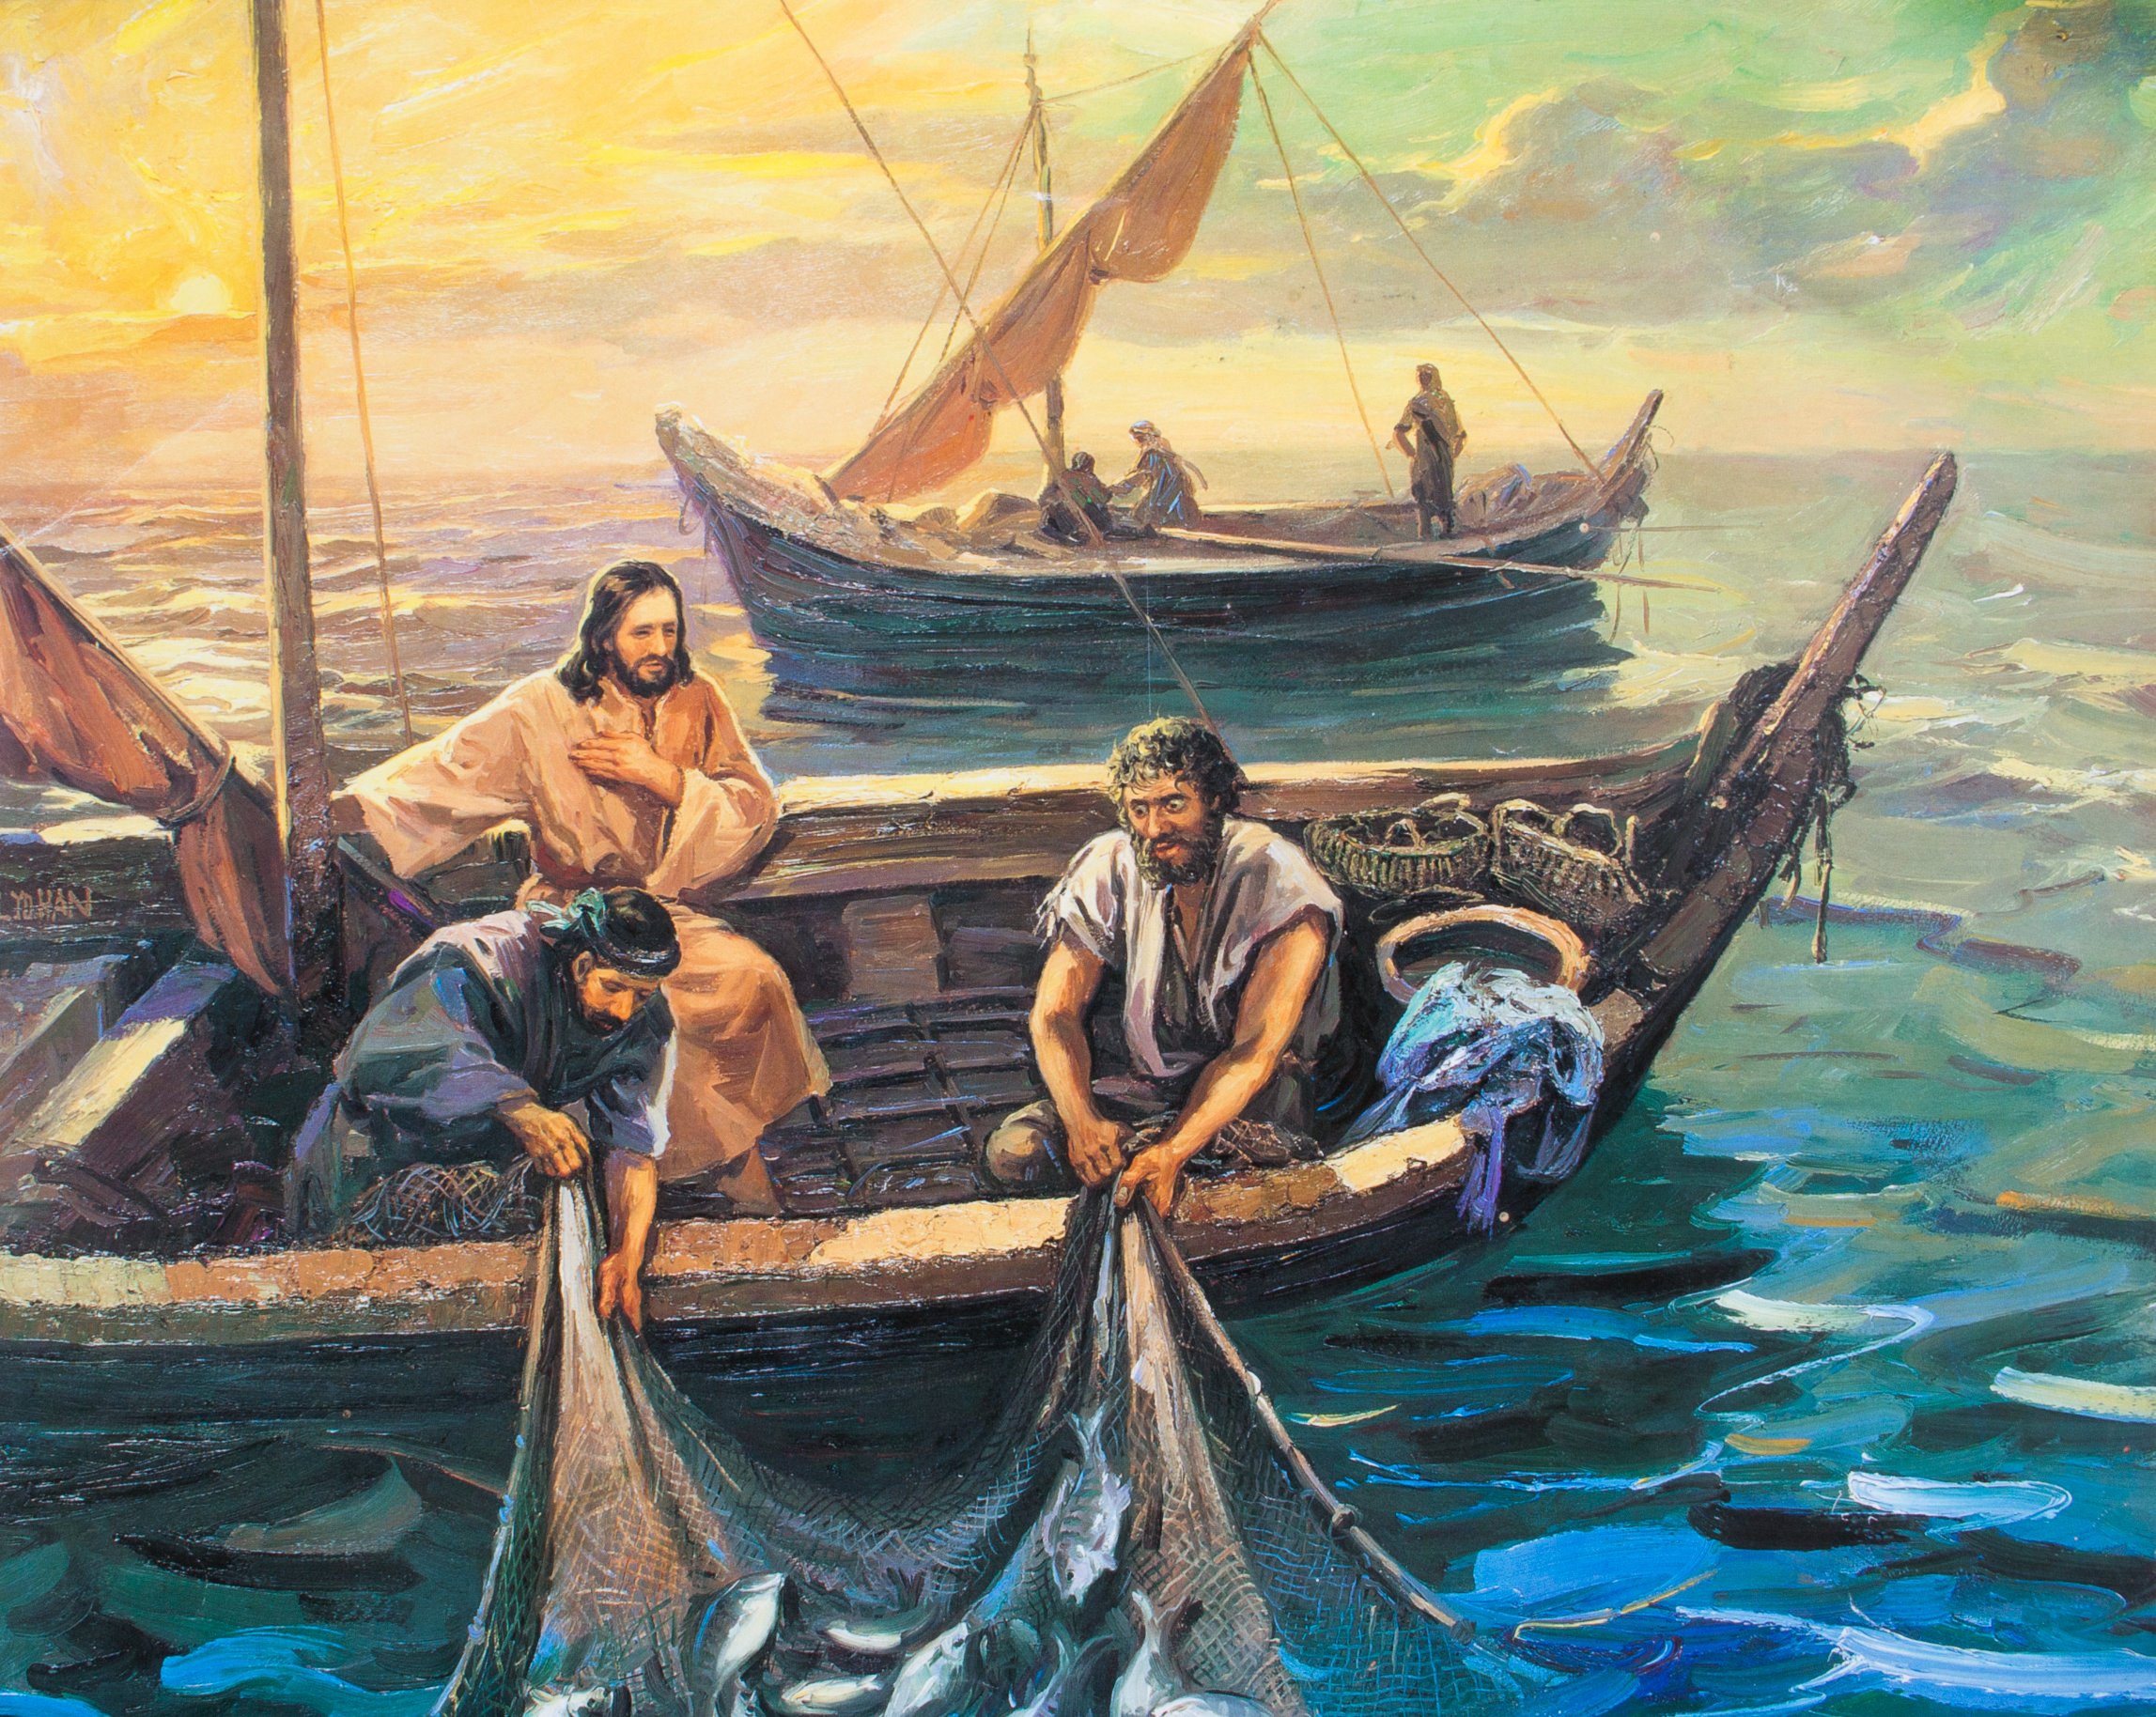 基督徒也許會如彼得一樣，在撒網捕魚時，因經歷耶穌所行的神蹟奇事感到驚奇。